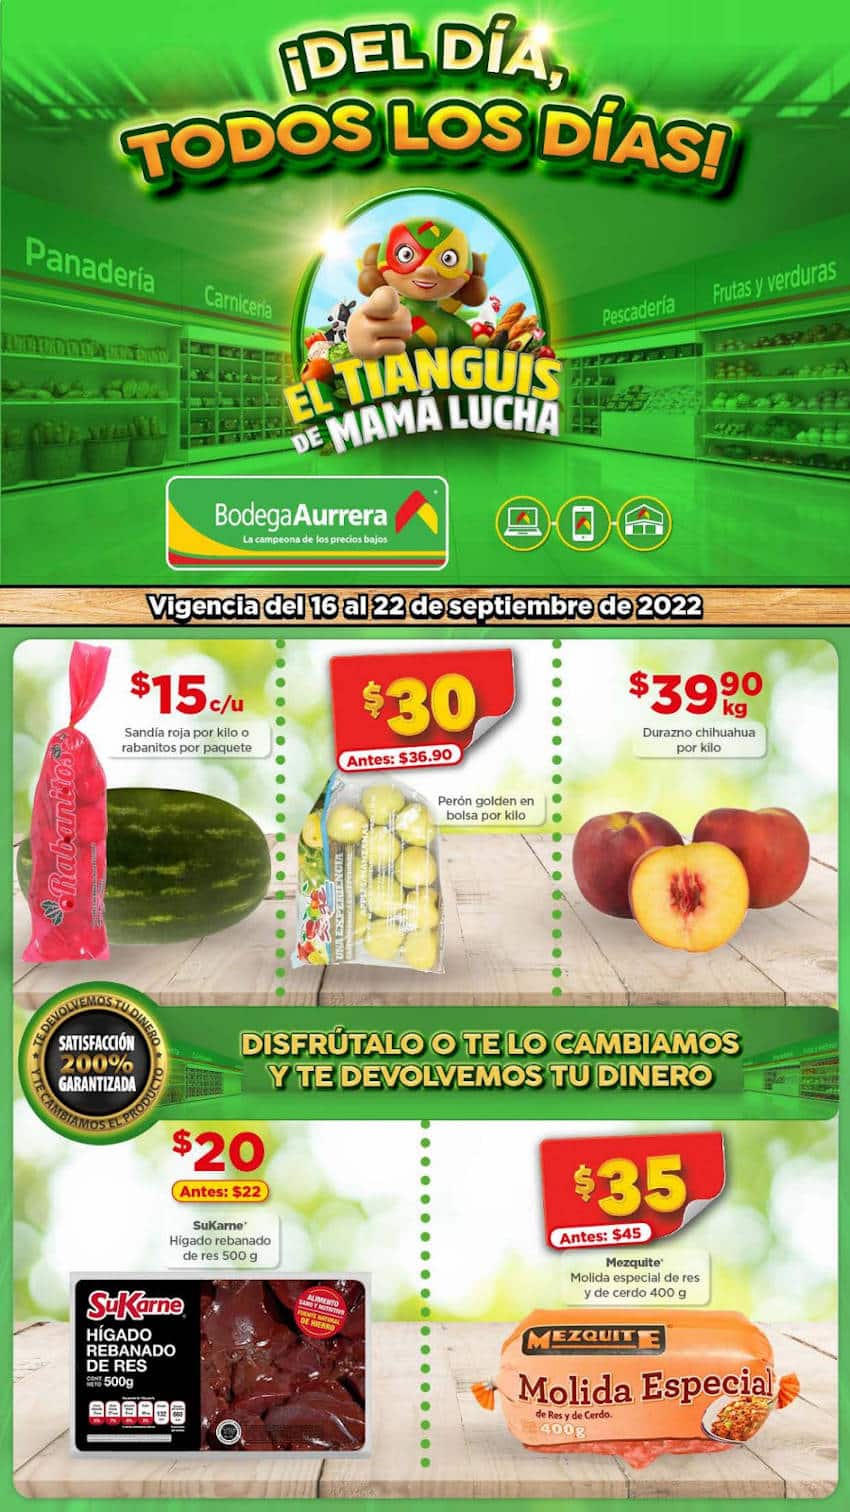 Ofertas Bodega Aurrerá frutas y verduras al 22 de septiembre 2022 1